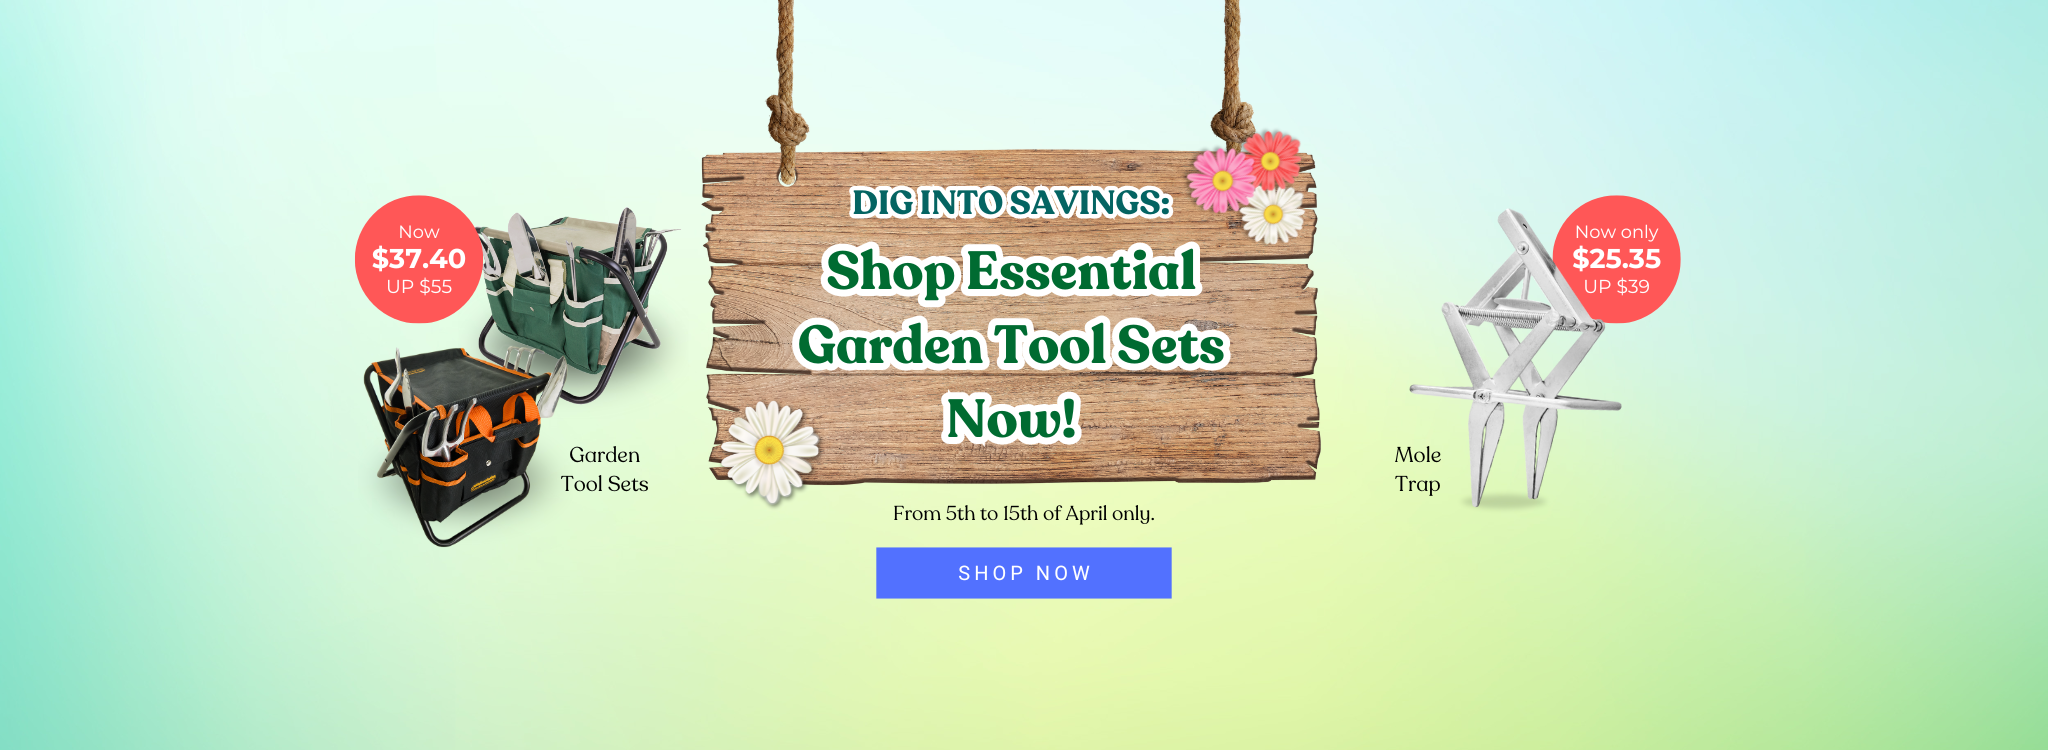 garden-tool-promo-desktop.png